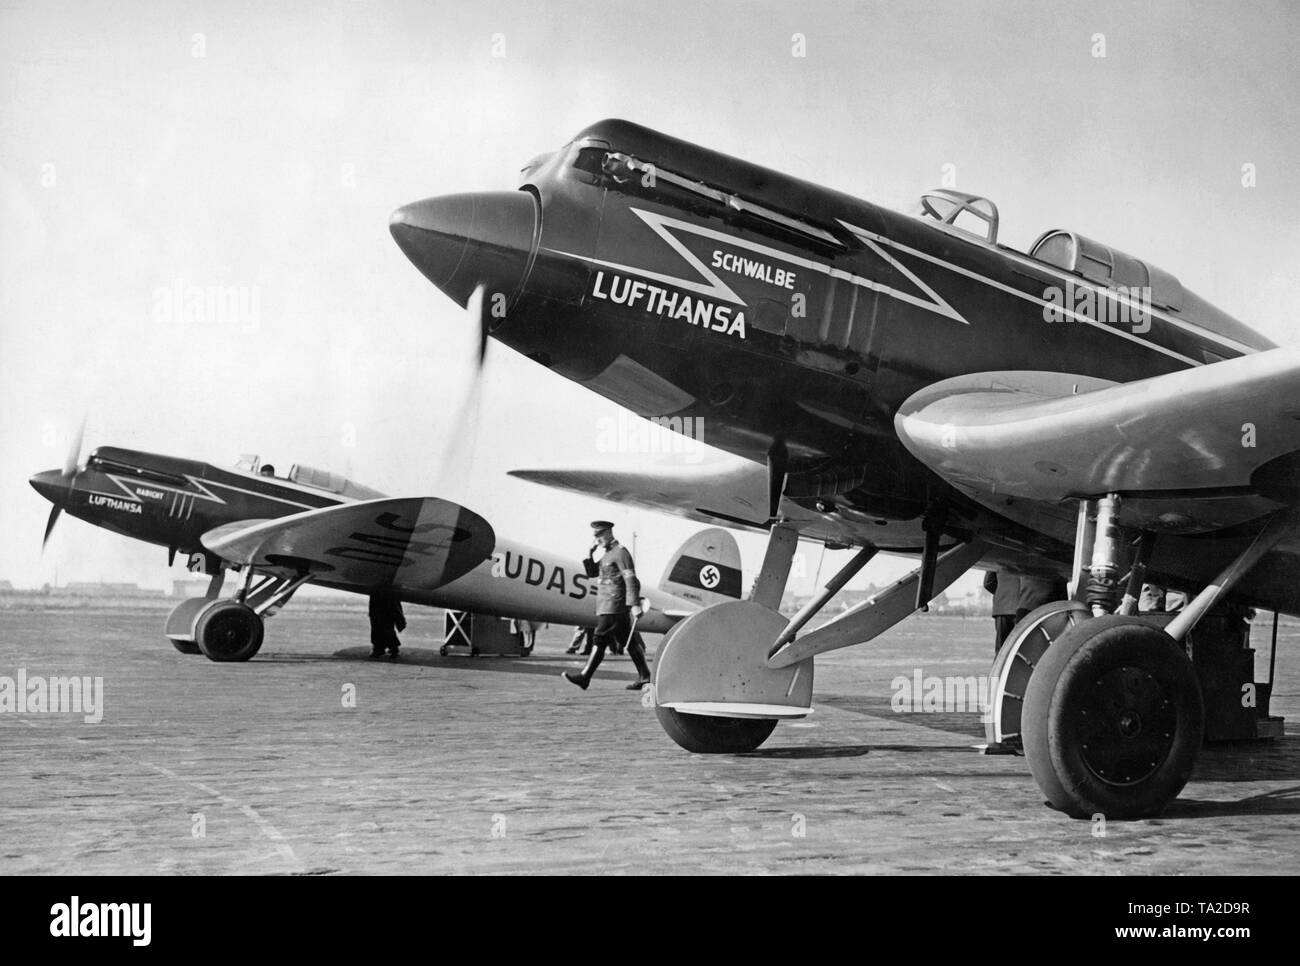 Negli anni trenta del novecento, Lufthansa usato Heinkel He 70 "Blitz" aeromobili tedesco su rotte interne. Con una velocità massima di 362 km / h, egli 70 era l'aereo di linea più veloce del suo tempo. Foto Stock